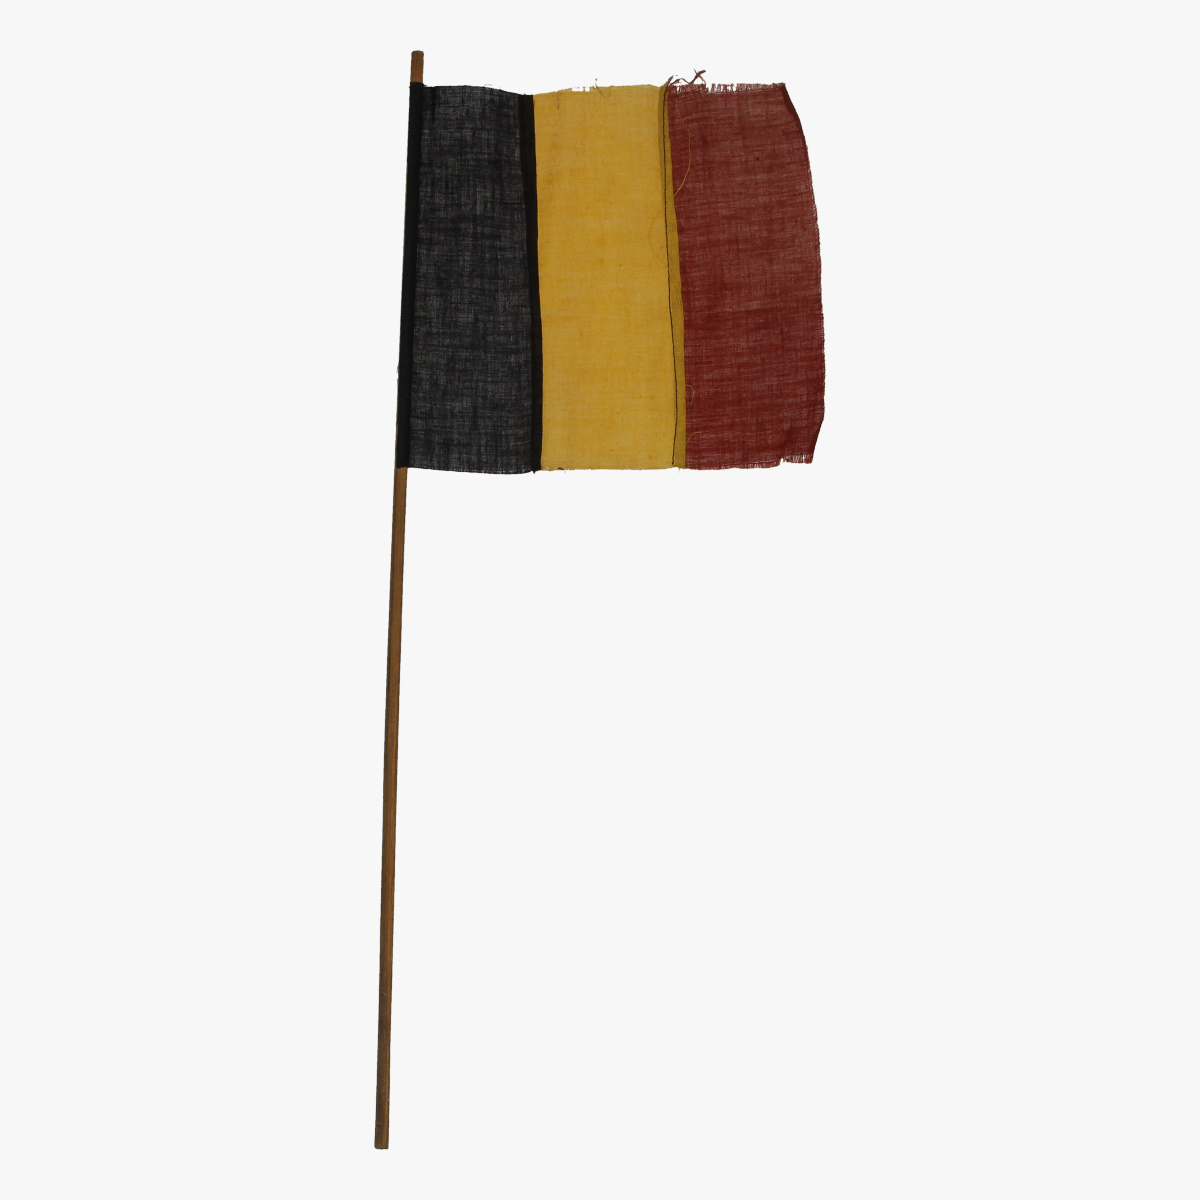 Afbeeldingen van belgisch vlagje expo 58 wereldtentoonstelling